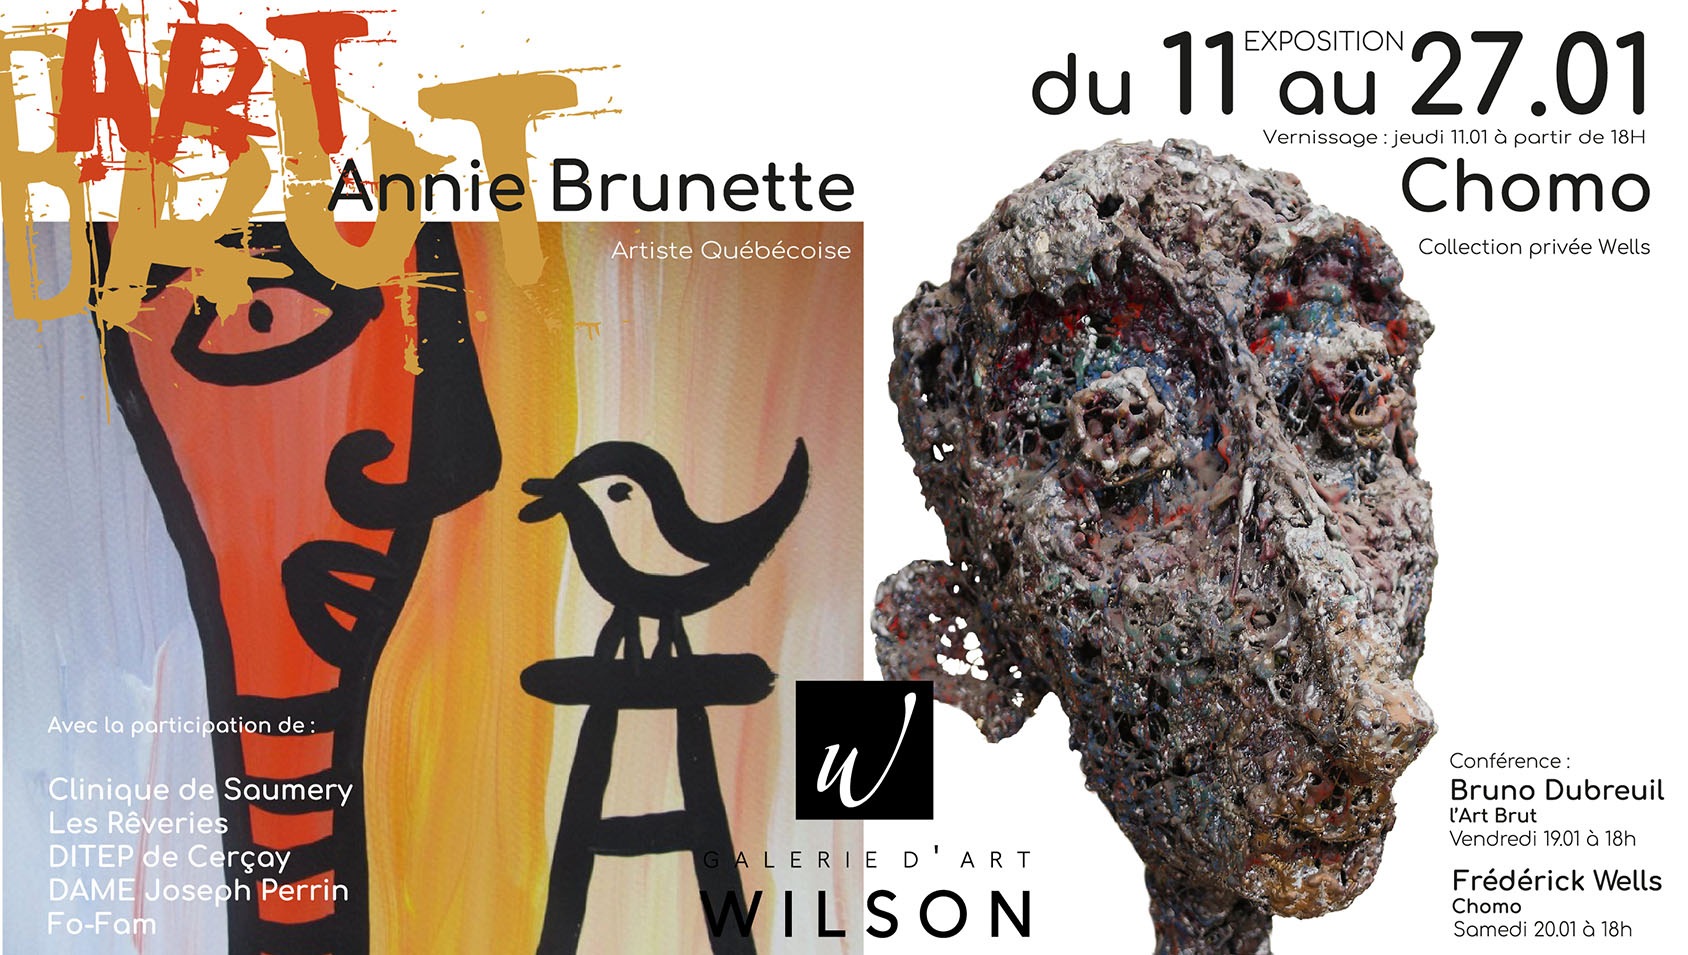 Conférence Art Brut par Bruno Dubreuil